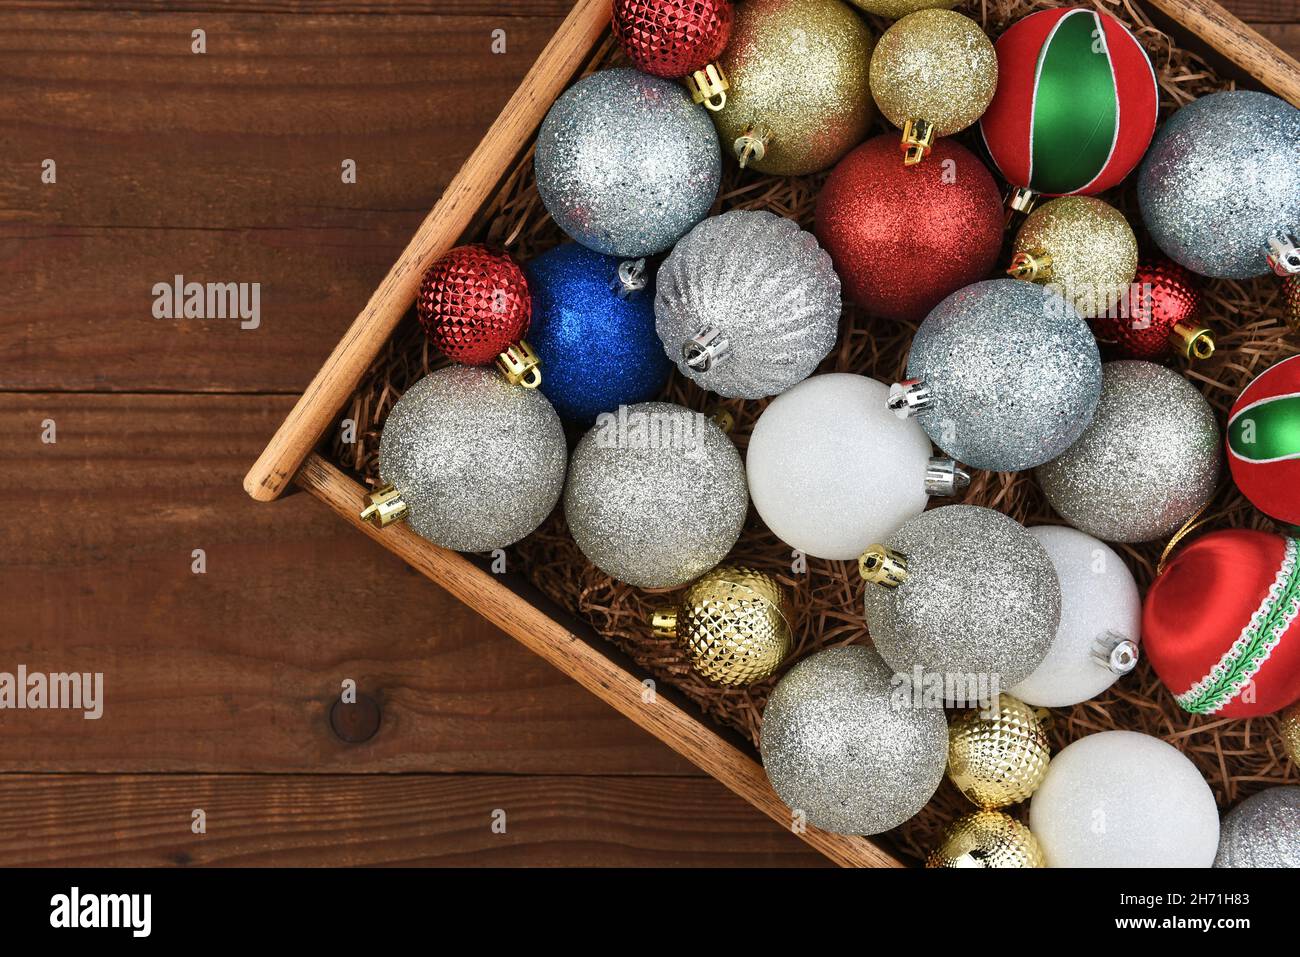 Décoration de Noël - boîte en bois d'ornements de sapin de Noël sur une surface rustique en bois sombre. Banque D'Images